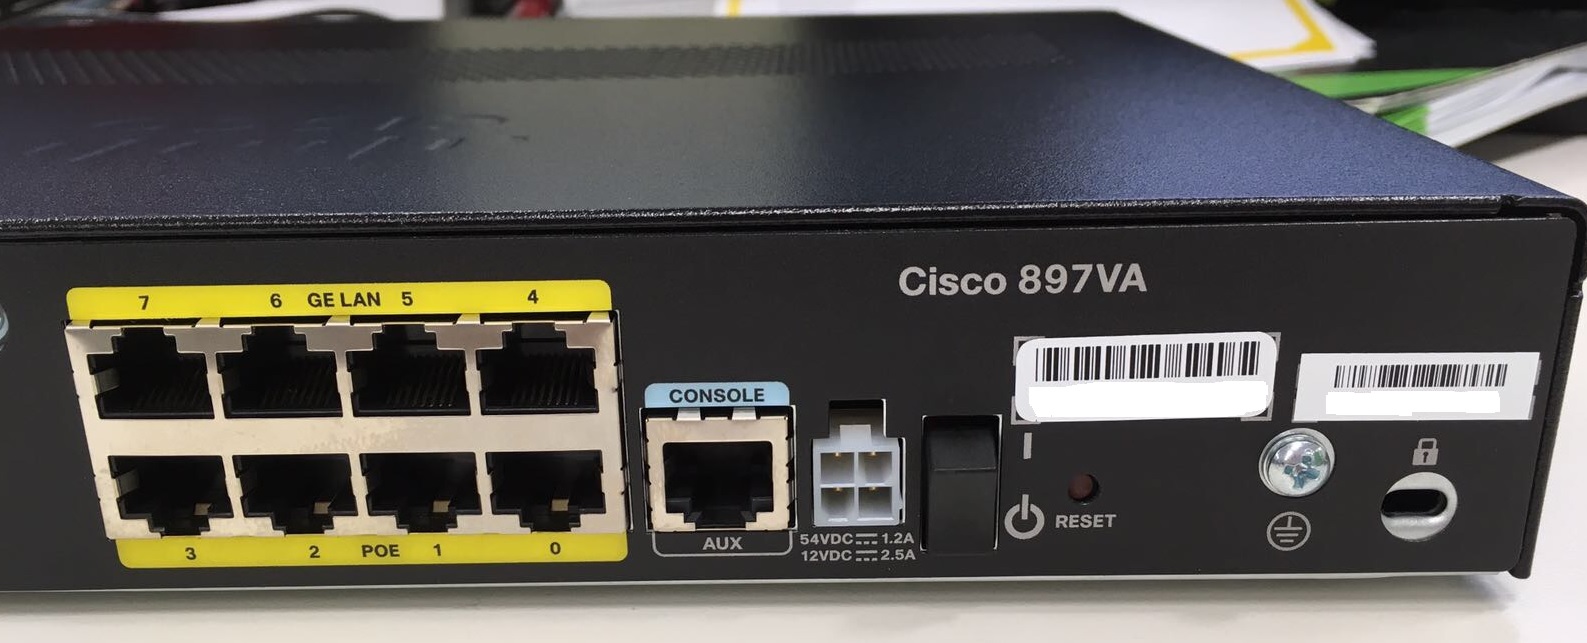 Cisco 897VA for NBN – //> A L C A T R O N . N E T